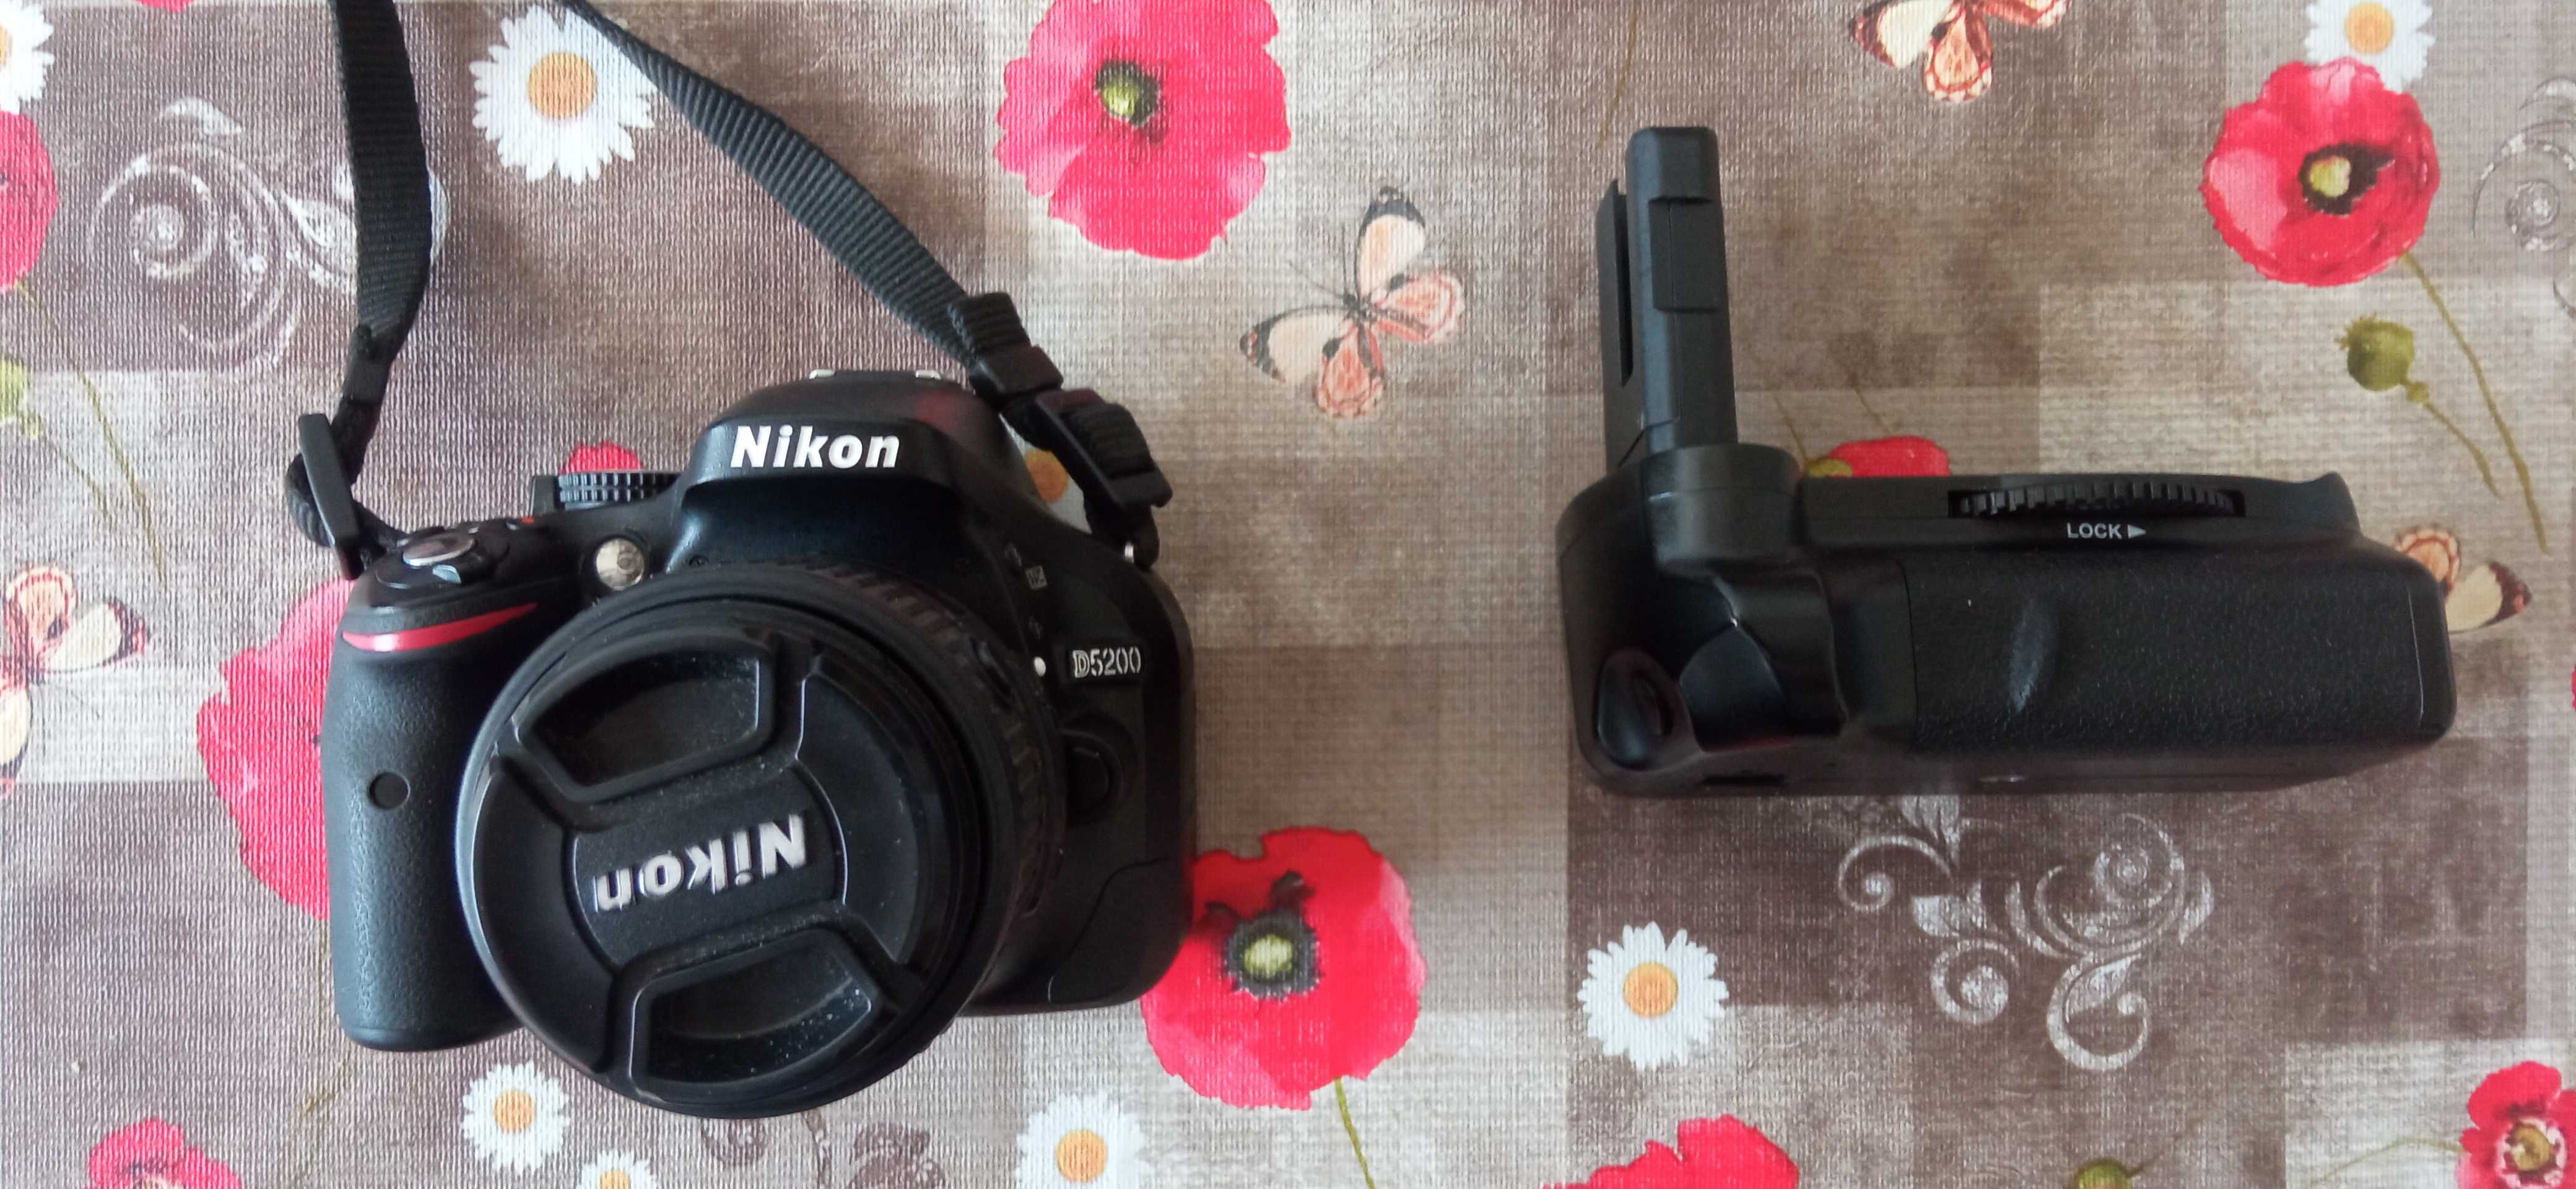 Nikon 5200 cu obiectiv 18:55